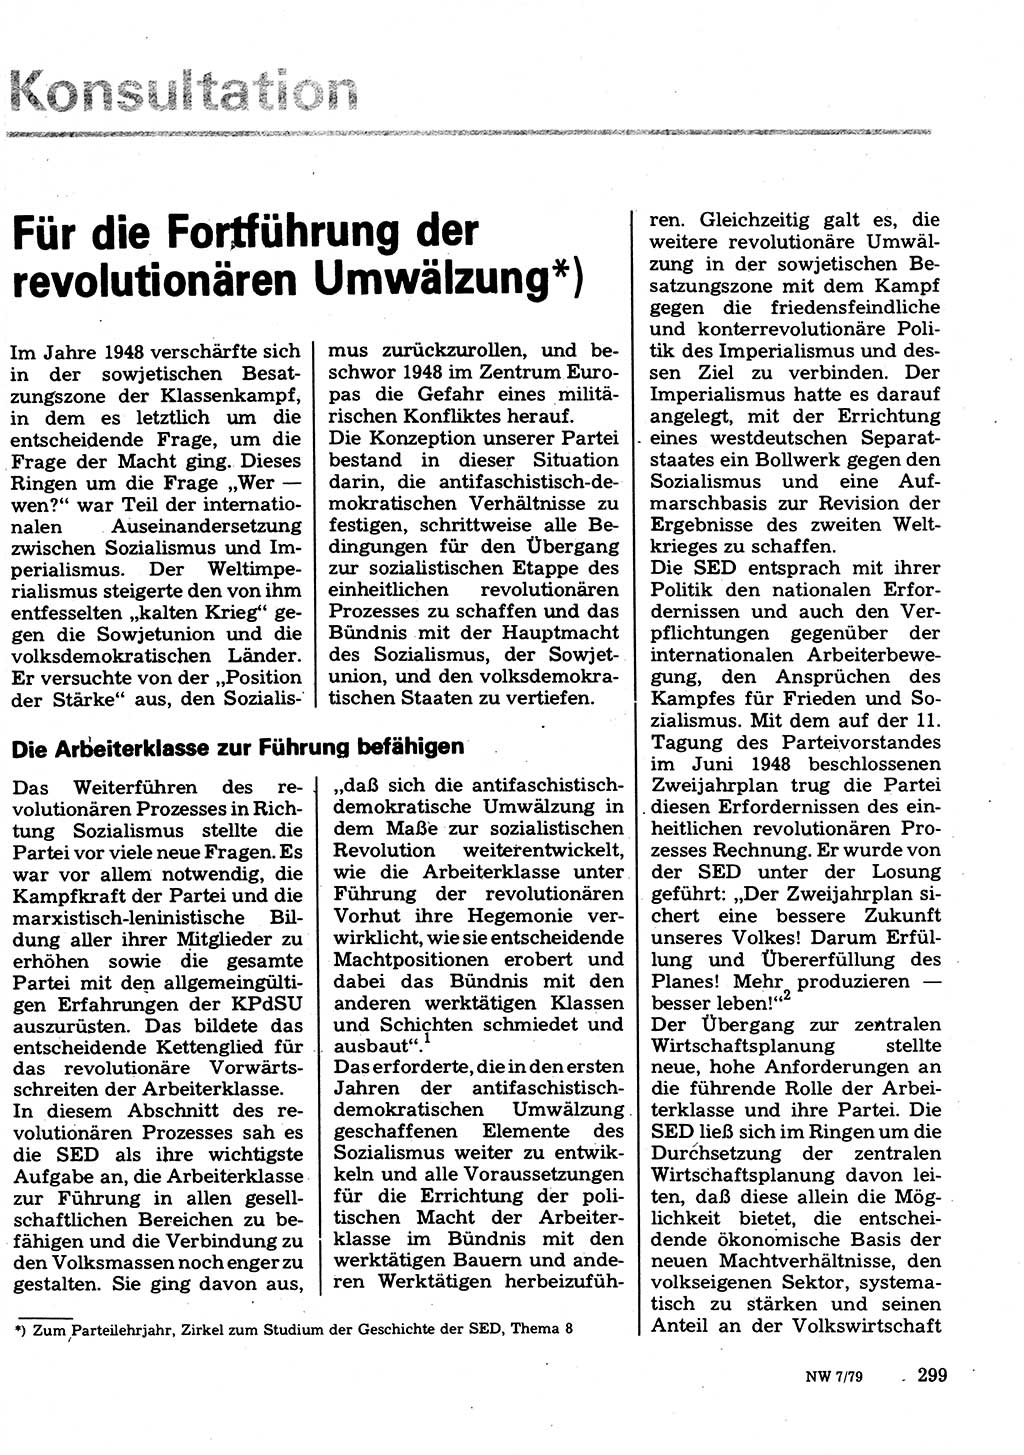 Neuer Weg (NW), Organ des Zentralkomitees (ZK) der SED (Sozialistische Einheitspartei Deutschlands) für Fragen des Parteilebens, 34. Jahrgang [Deutsche Demokratische Republik (DDR)] 1979, Seite 299 (NW ZK SED DDR 1979, S. 299)